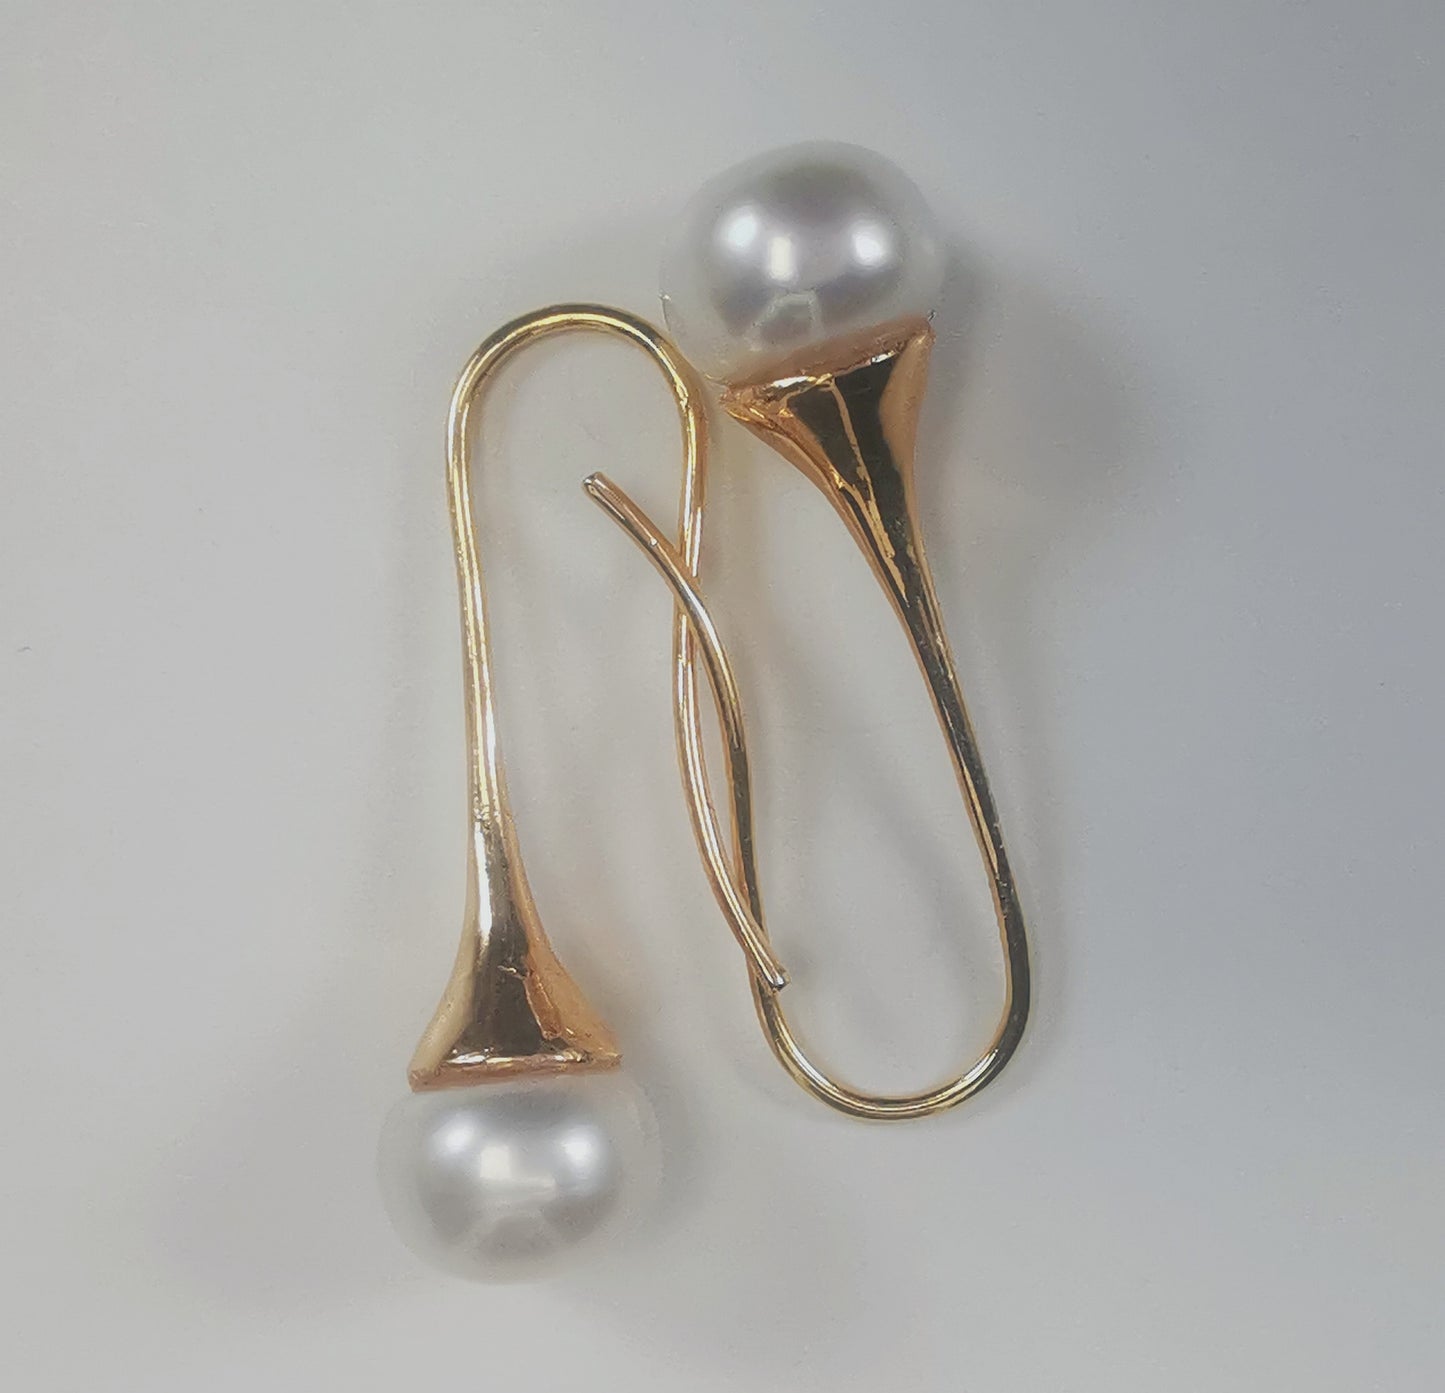 Boucles d'oreilles perles de culture blanches 9mm sur pendants longs plaqués or. Présentées cote o cote, boucle de gauche perle en bas, pendant tourné vers la droite, , celle de droite, perle en haut, pendant tourné vers la gauche, sur fond blanc. Vue de dessus.